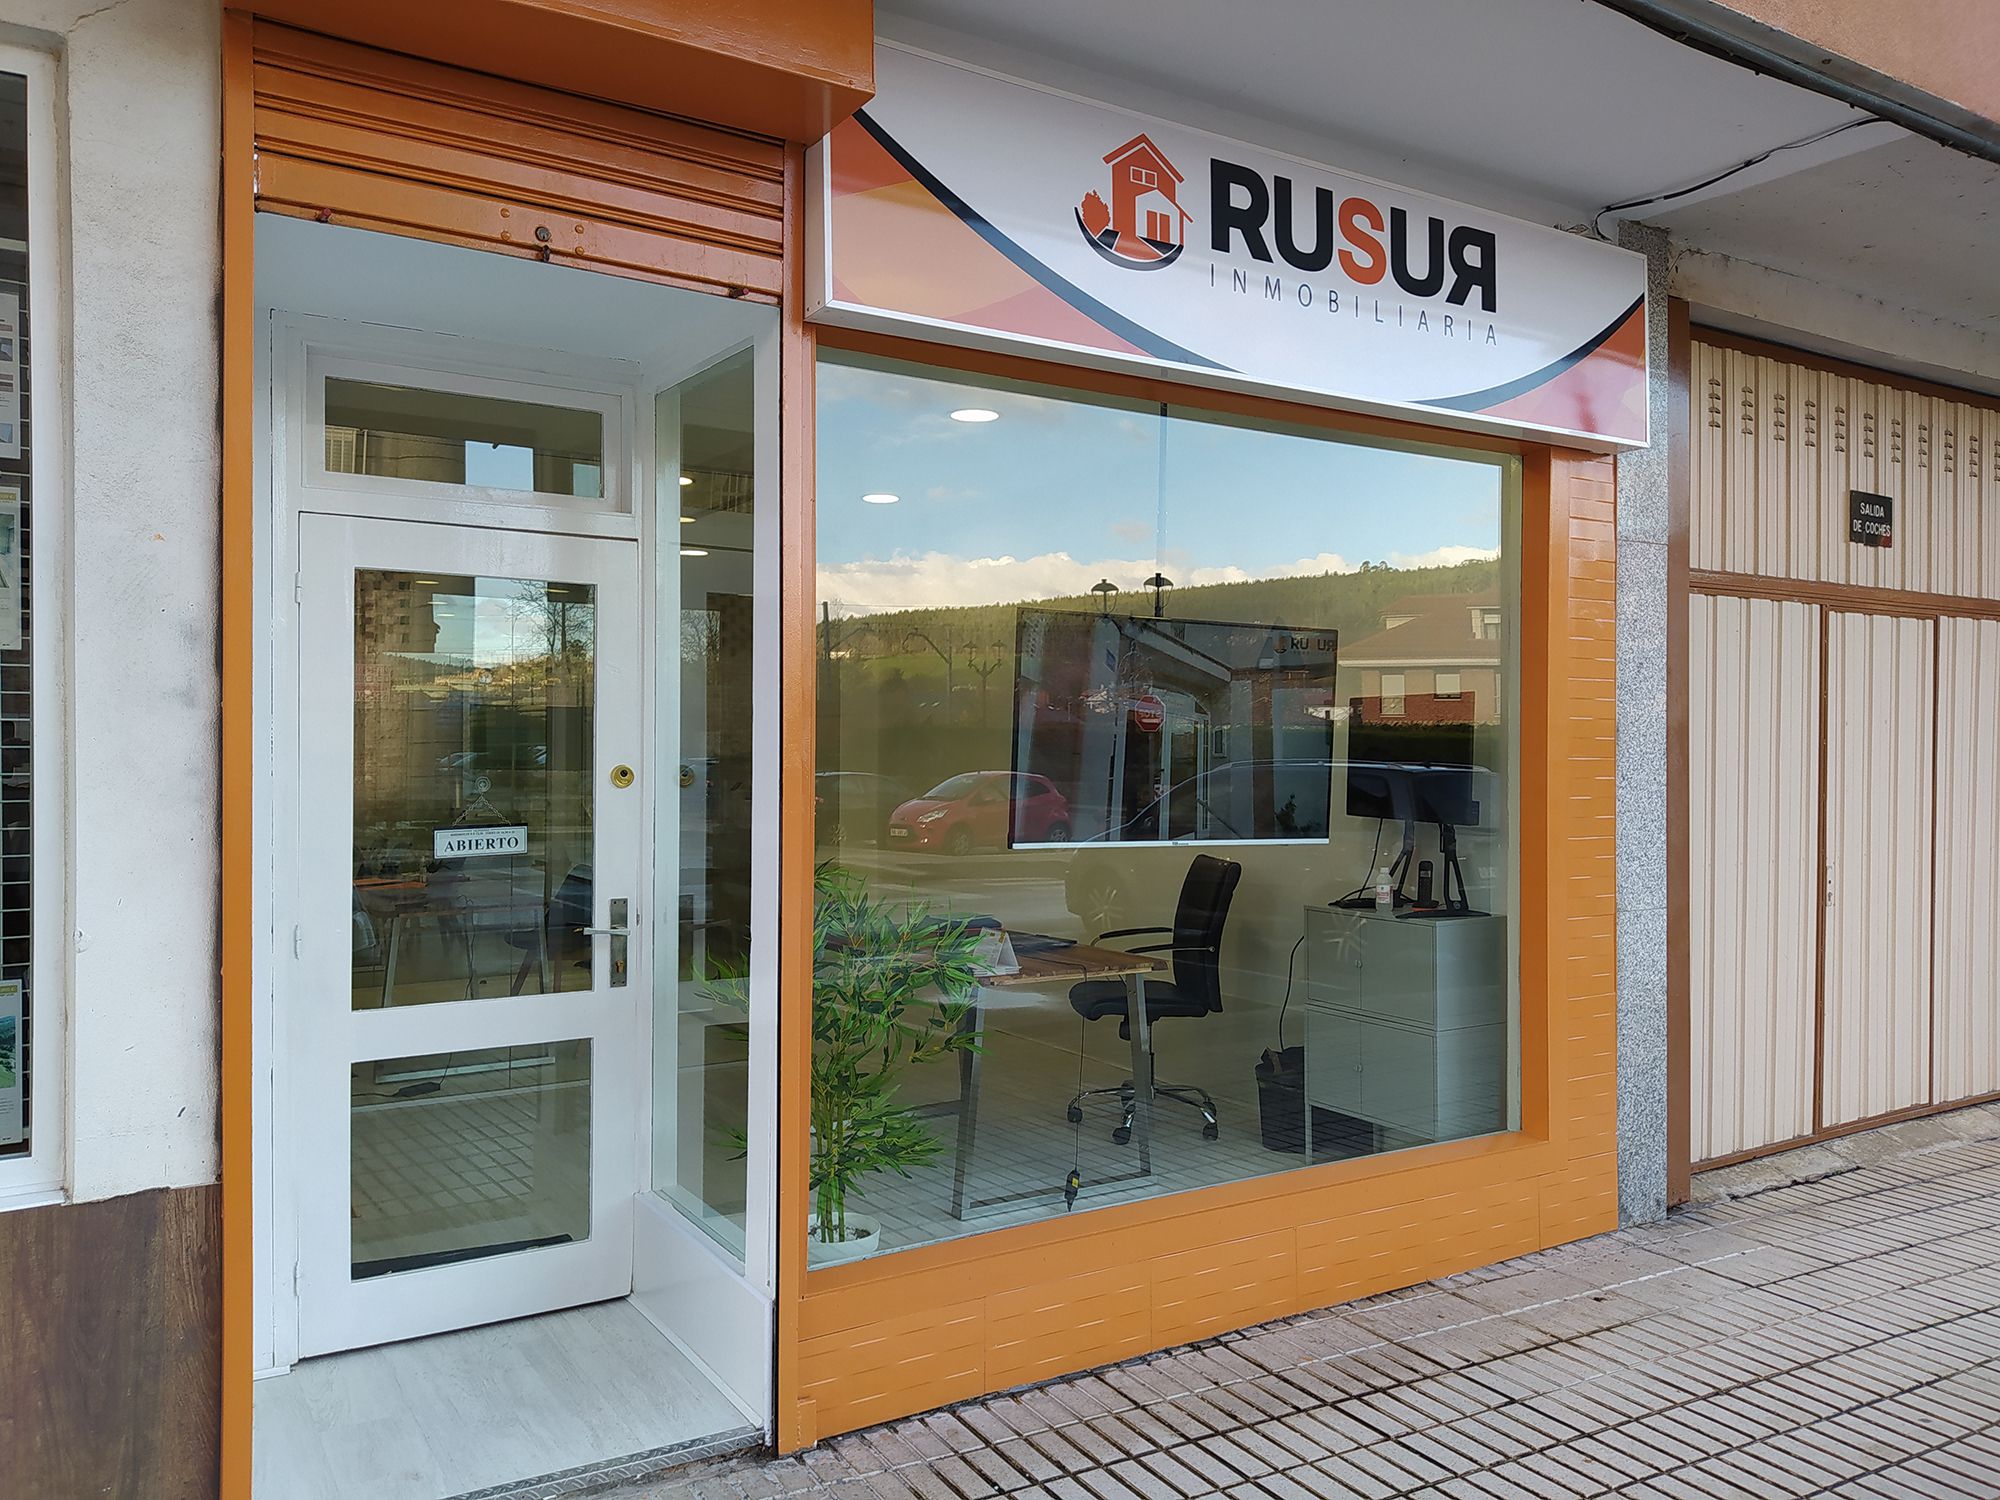 Rusur, tu inmobiliaria de confianza en Cantabria. RUSUR INMOBILIARIA en Renedo